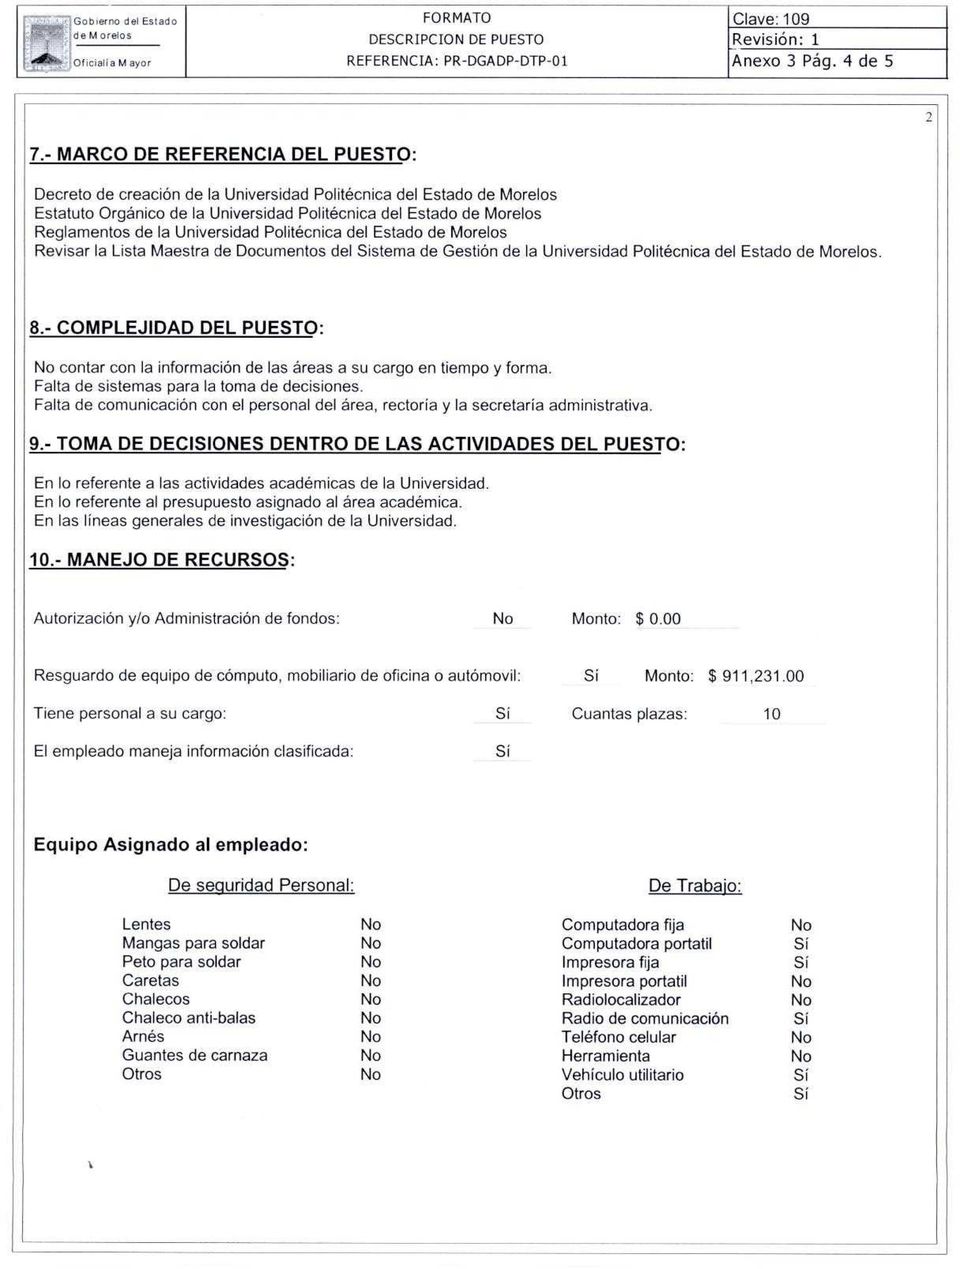 Estado Revisar la Lista Maestra de Documentos del Sistema de Gestión de la Universidad Politécnica del Estado. 8.